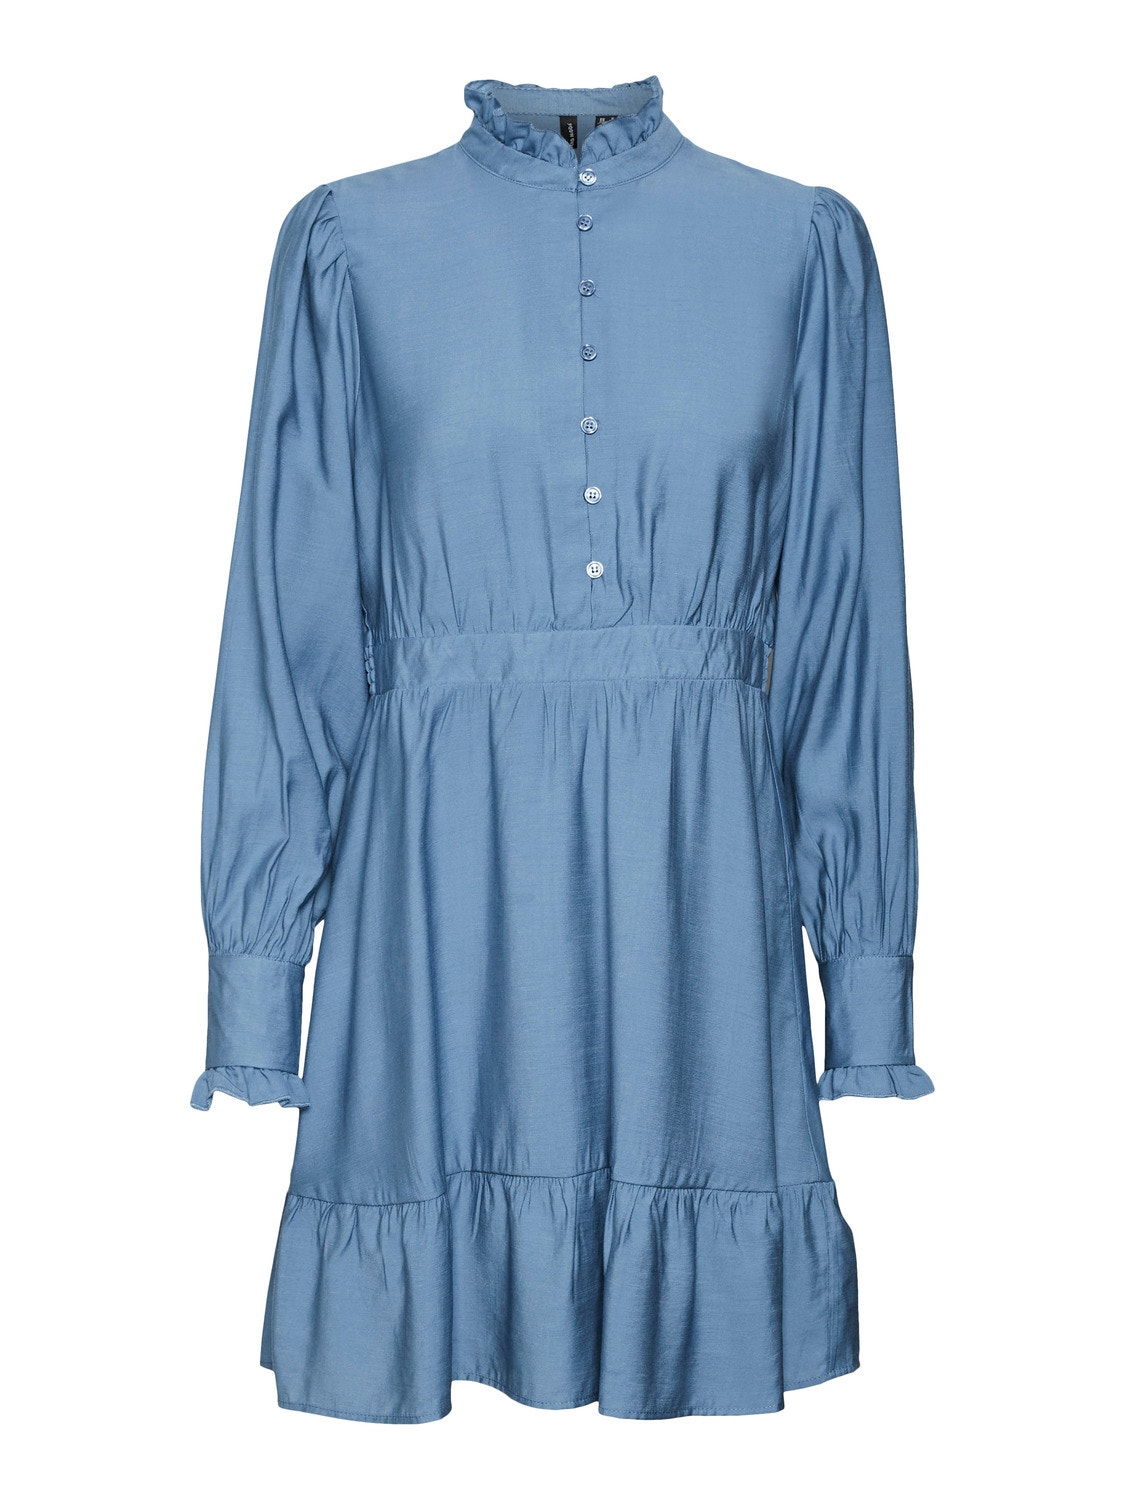 Vero Moda VMCIA Short dress -Coronet Blue - 10300490